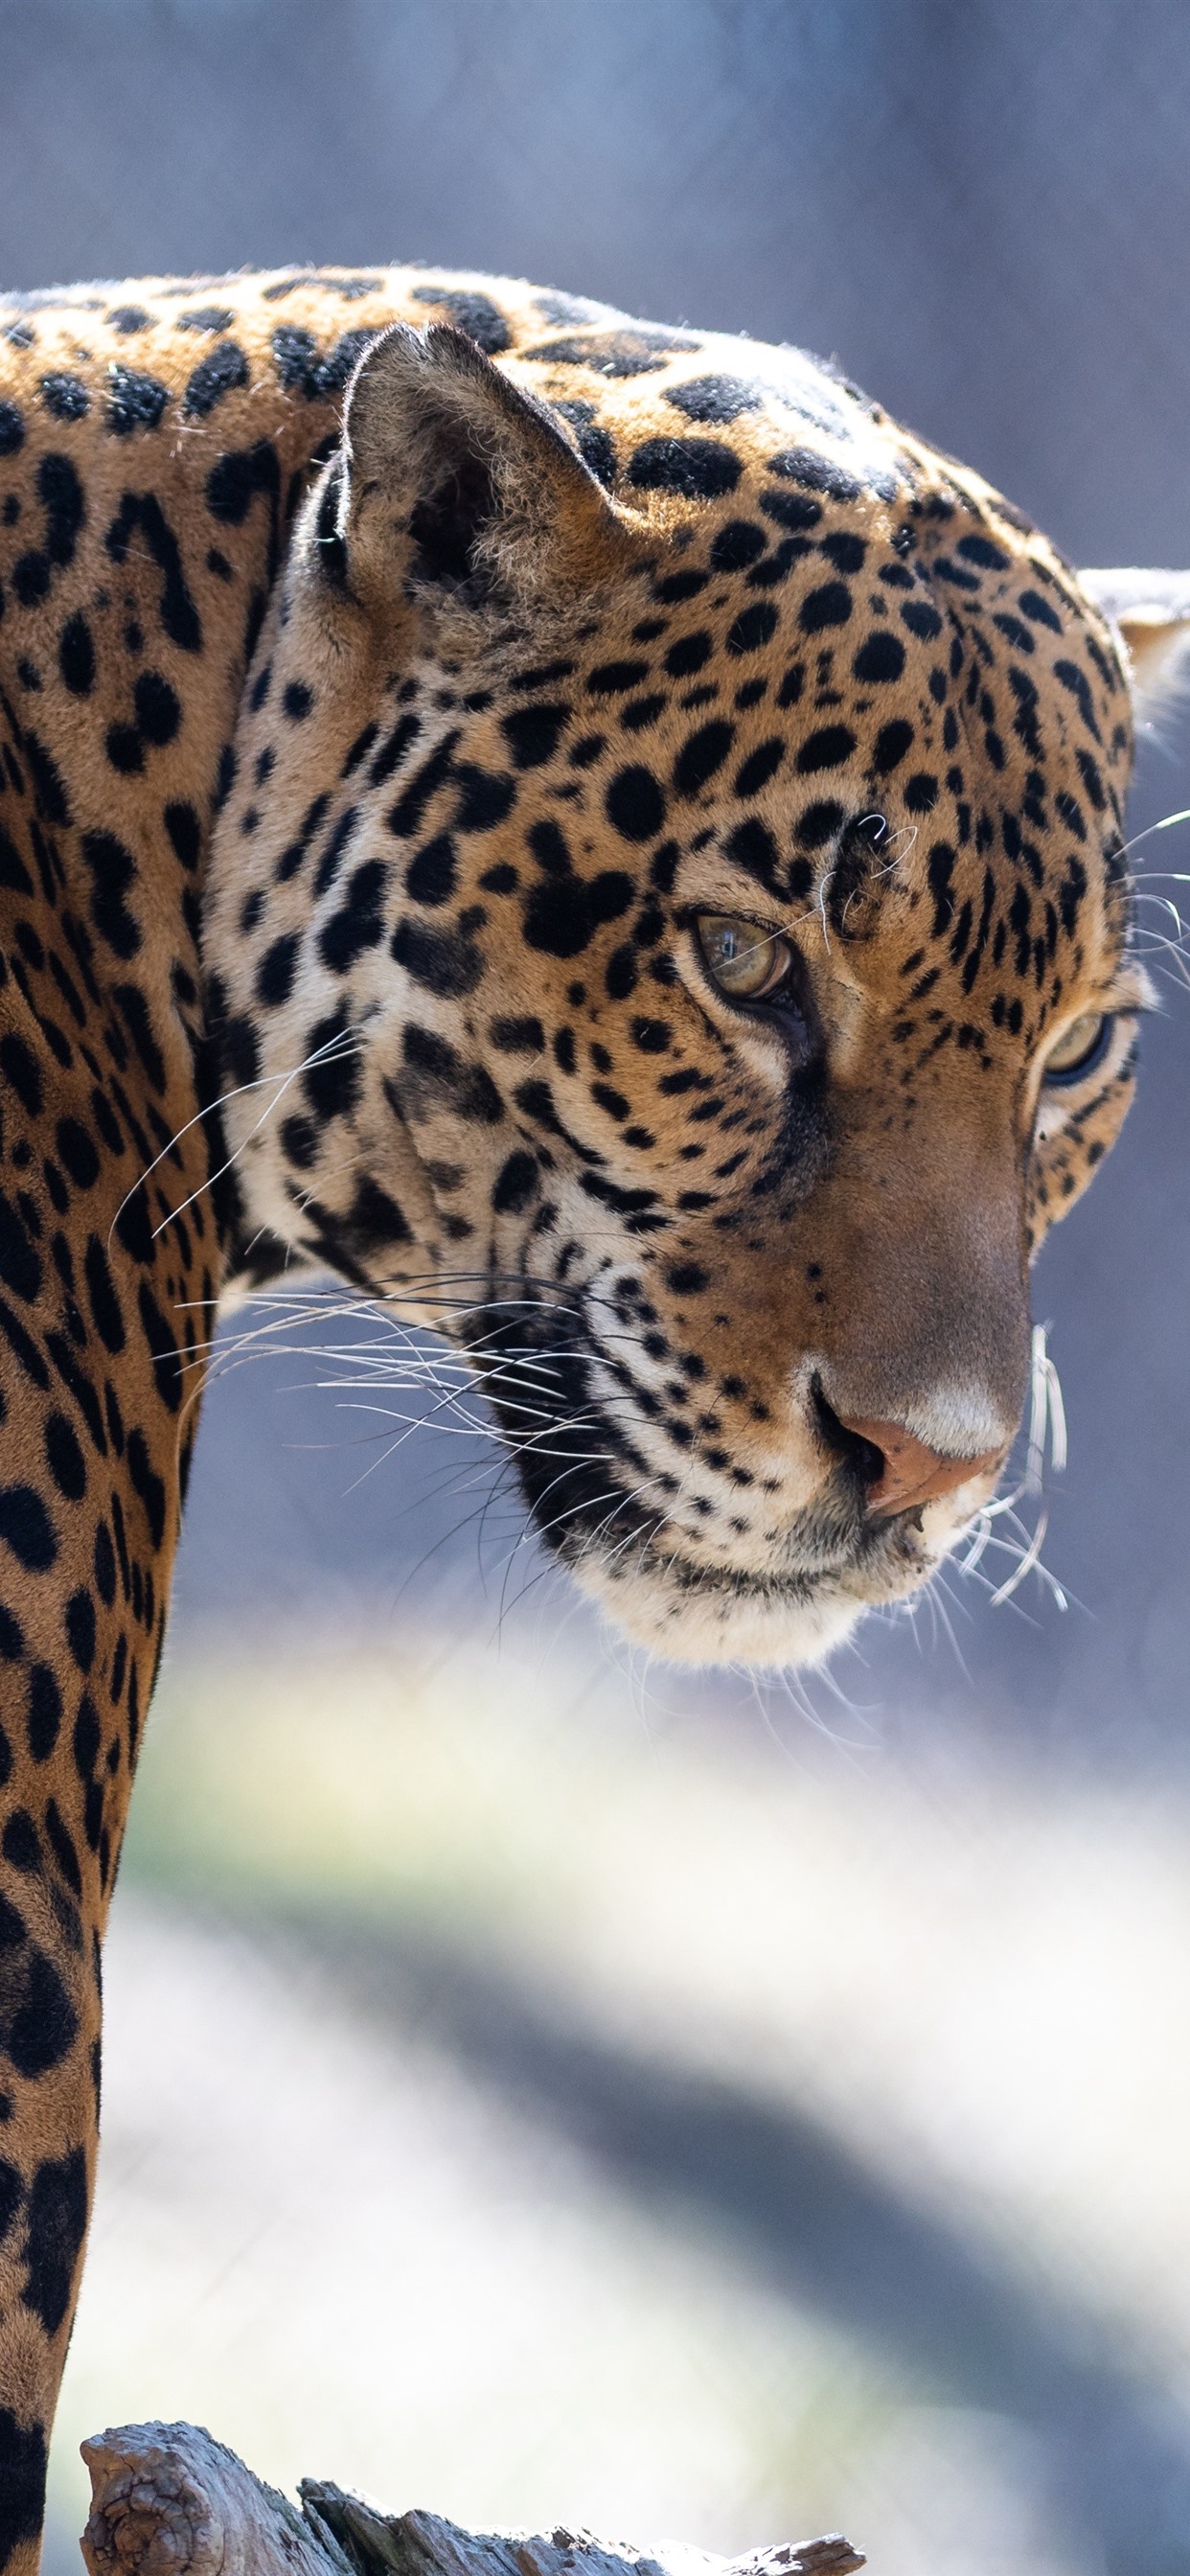 Iphone Wallpaper Zoo Animal, Jaguar, Look Back - Leopard Wallpaper Iphone Xs Max - HD Wallpaper 